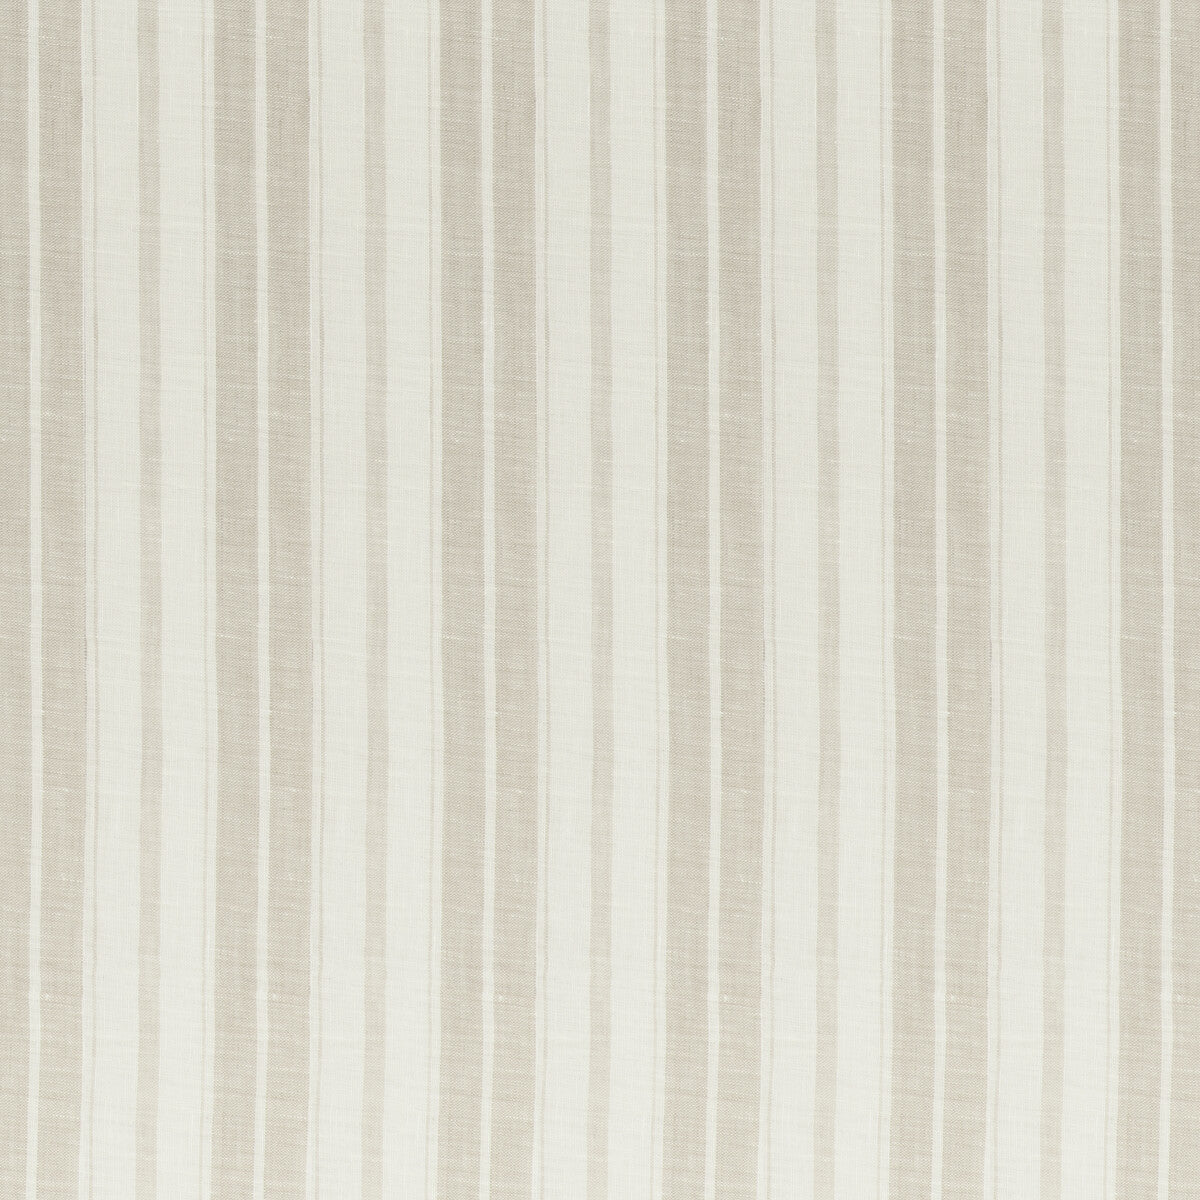 Kravet Design fabric in 4841-116 color - pattern 4841.116.0 - by Kravet Design